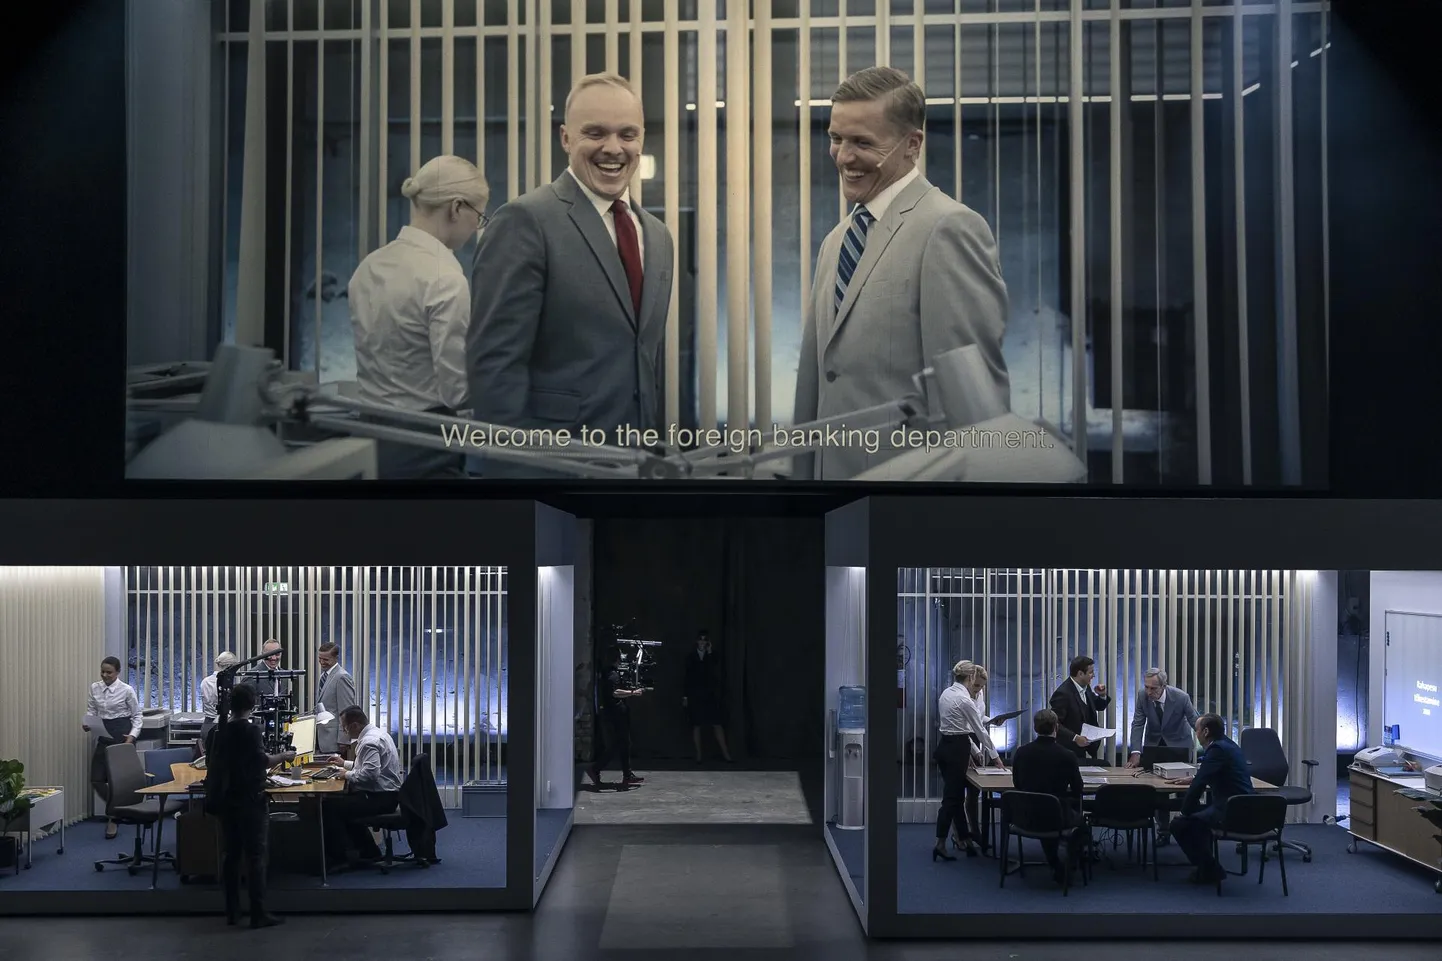 Tegevus pangakontoris on kaamerate vahendusel kuvatud suurele ekraanile, kus on näha vestlemas Oliveri (Karmo Nigula, vasakul) ja Arturit (Tõnis Niinemets).